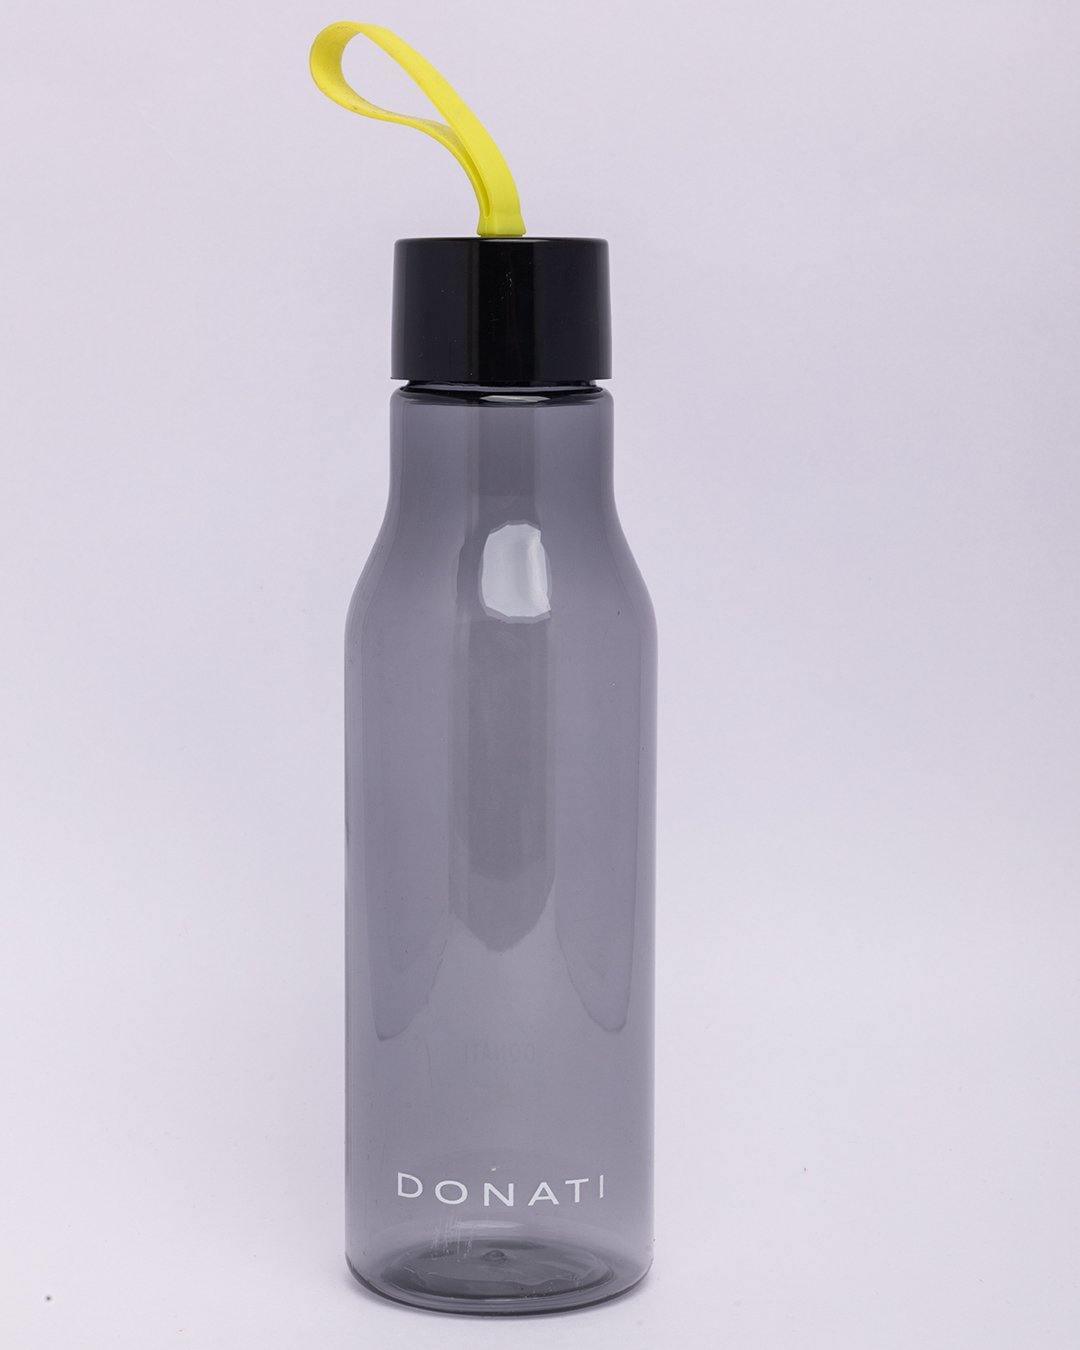 https://market99.com/cdn/shop/files/donati-bottle-water-bottle-black-plastic-600-ml-bottle-600ml-2-29021365534890.jpg?v=1692860337&width=1080